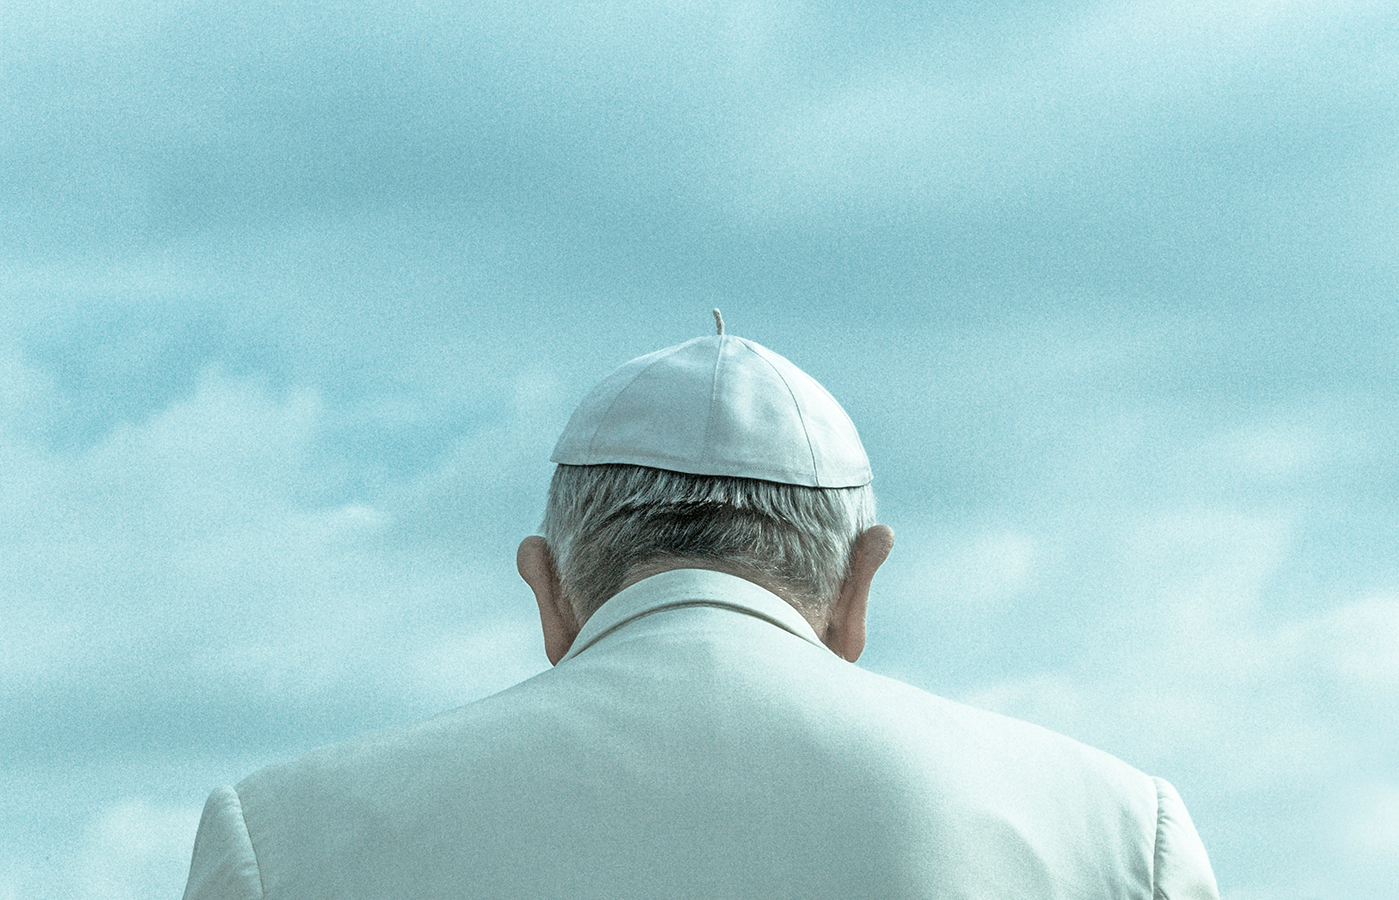 Eduardo – “Start praying for the new Pontiff now.”